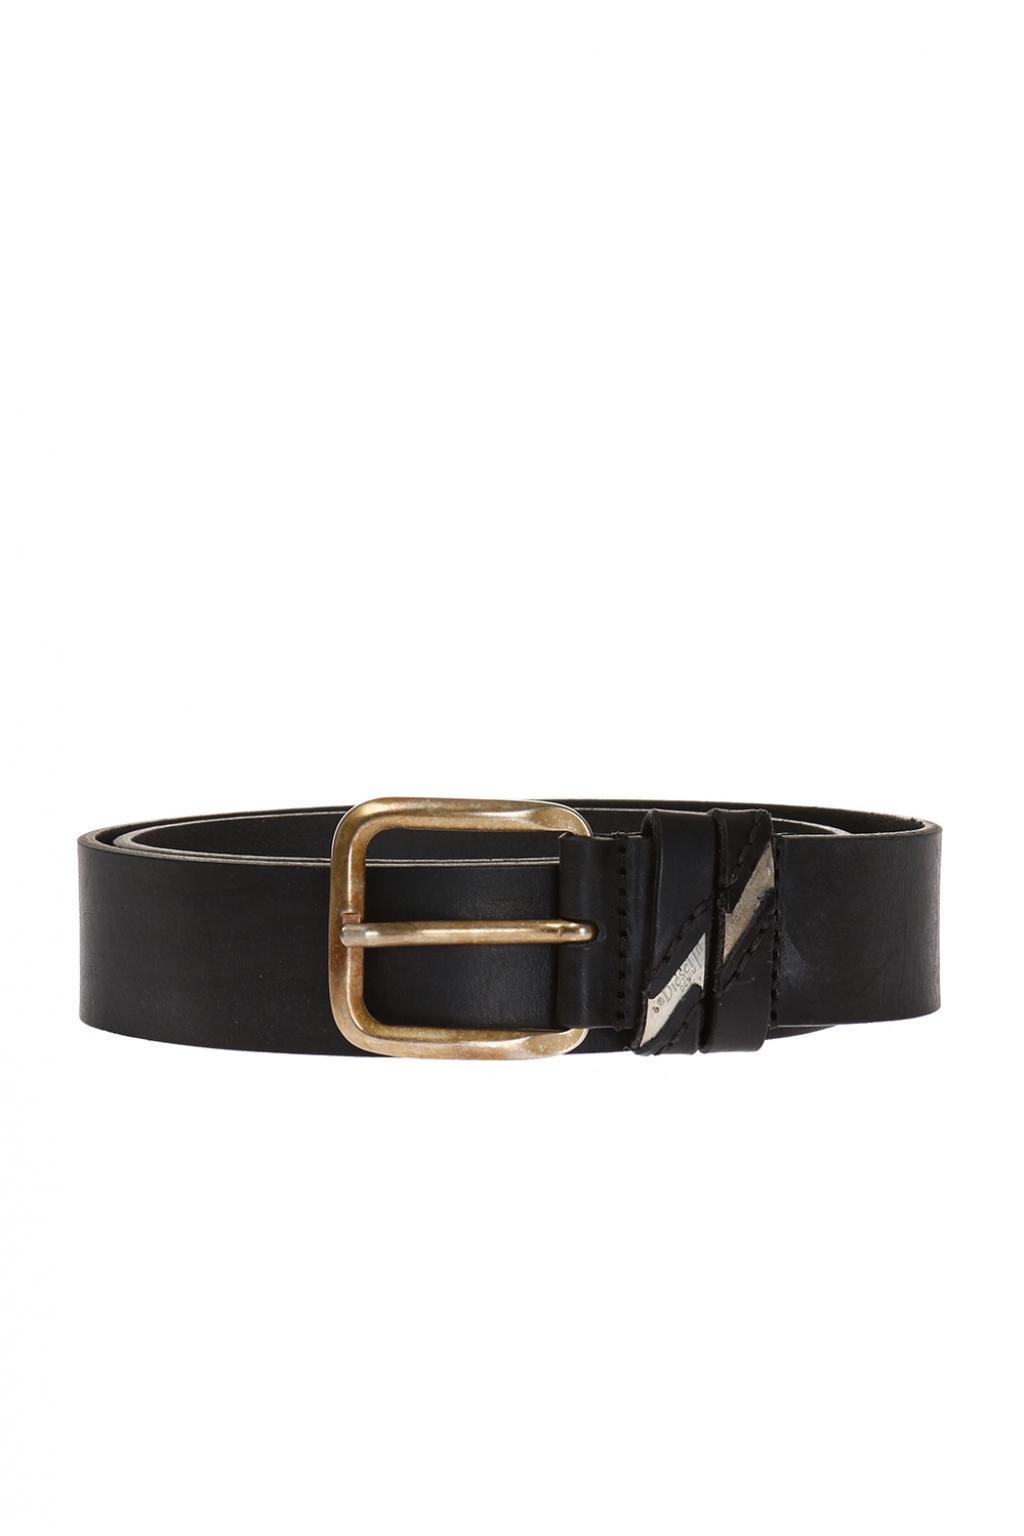 DIESEL Leather Belt in Black for Men - Save 100% - Lyst